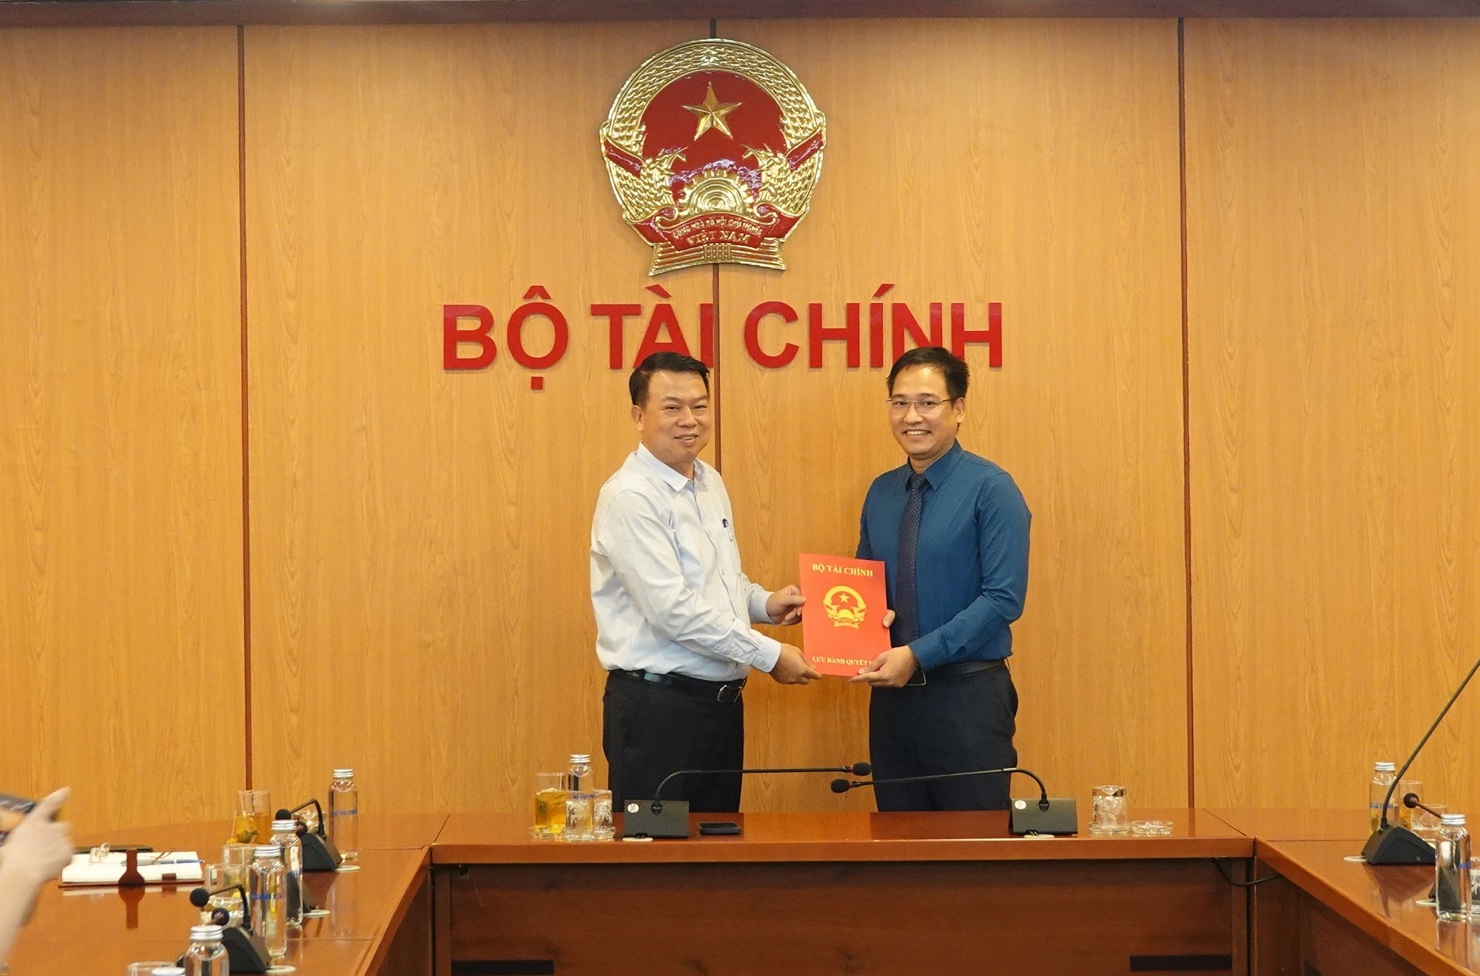 Thứ trưởng Bộ Tài chính Nguyễn Đức Chi trao quyết định tiếp nhận, bổ nhiệm Phó Chánh Văn phòng Bộ Tài chính cho ông Trần Nam Trung.